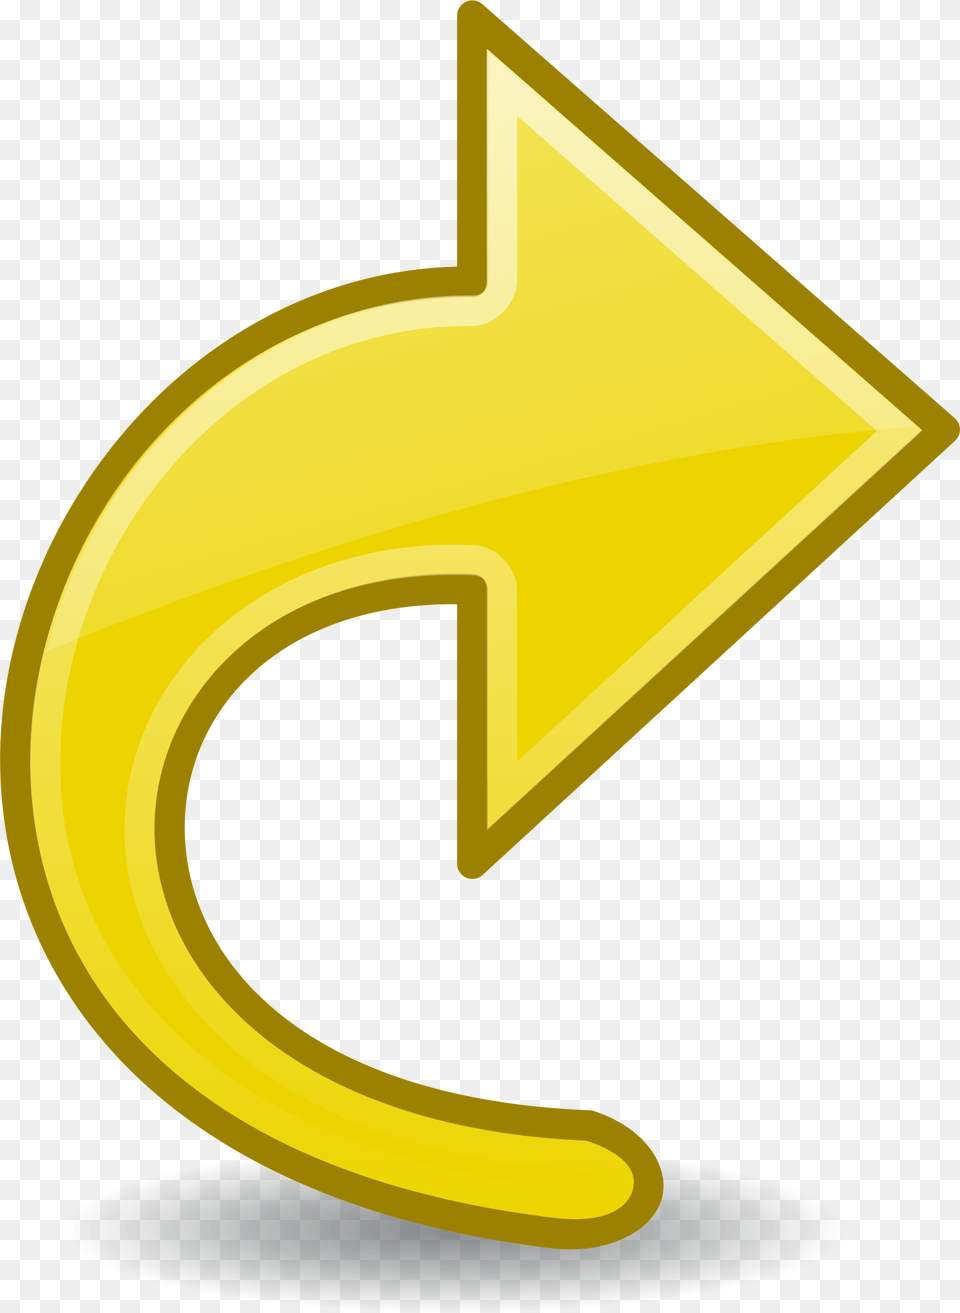 Computer Icons Arrow Symbol Diagram Yellow Simbol Arrow Yellow, Text, Number Png Image